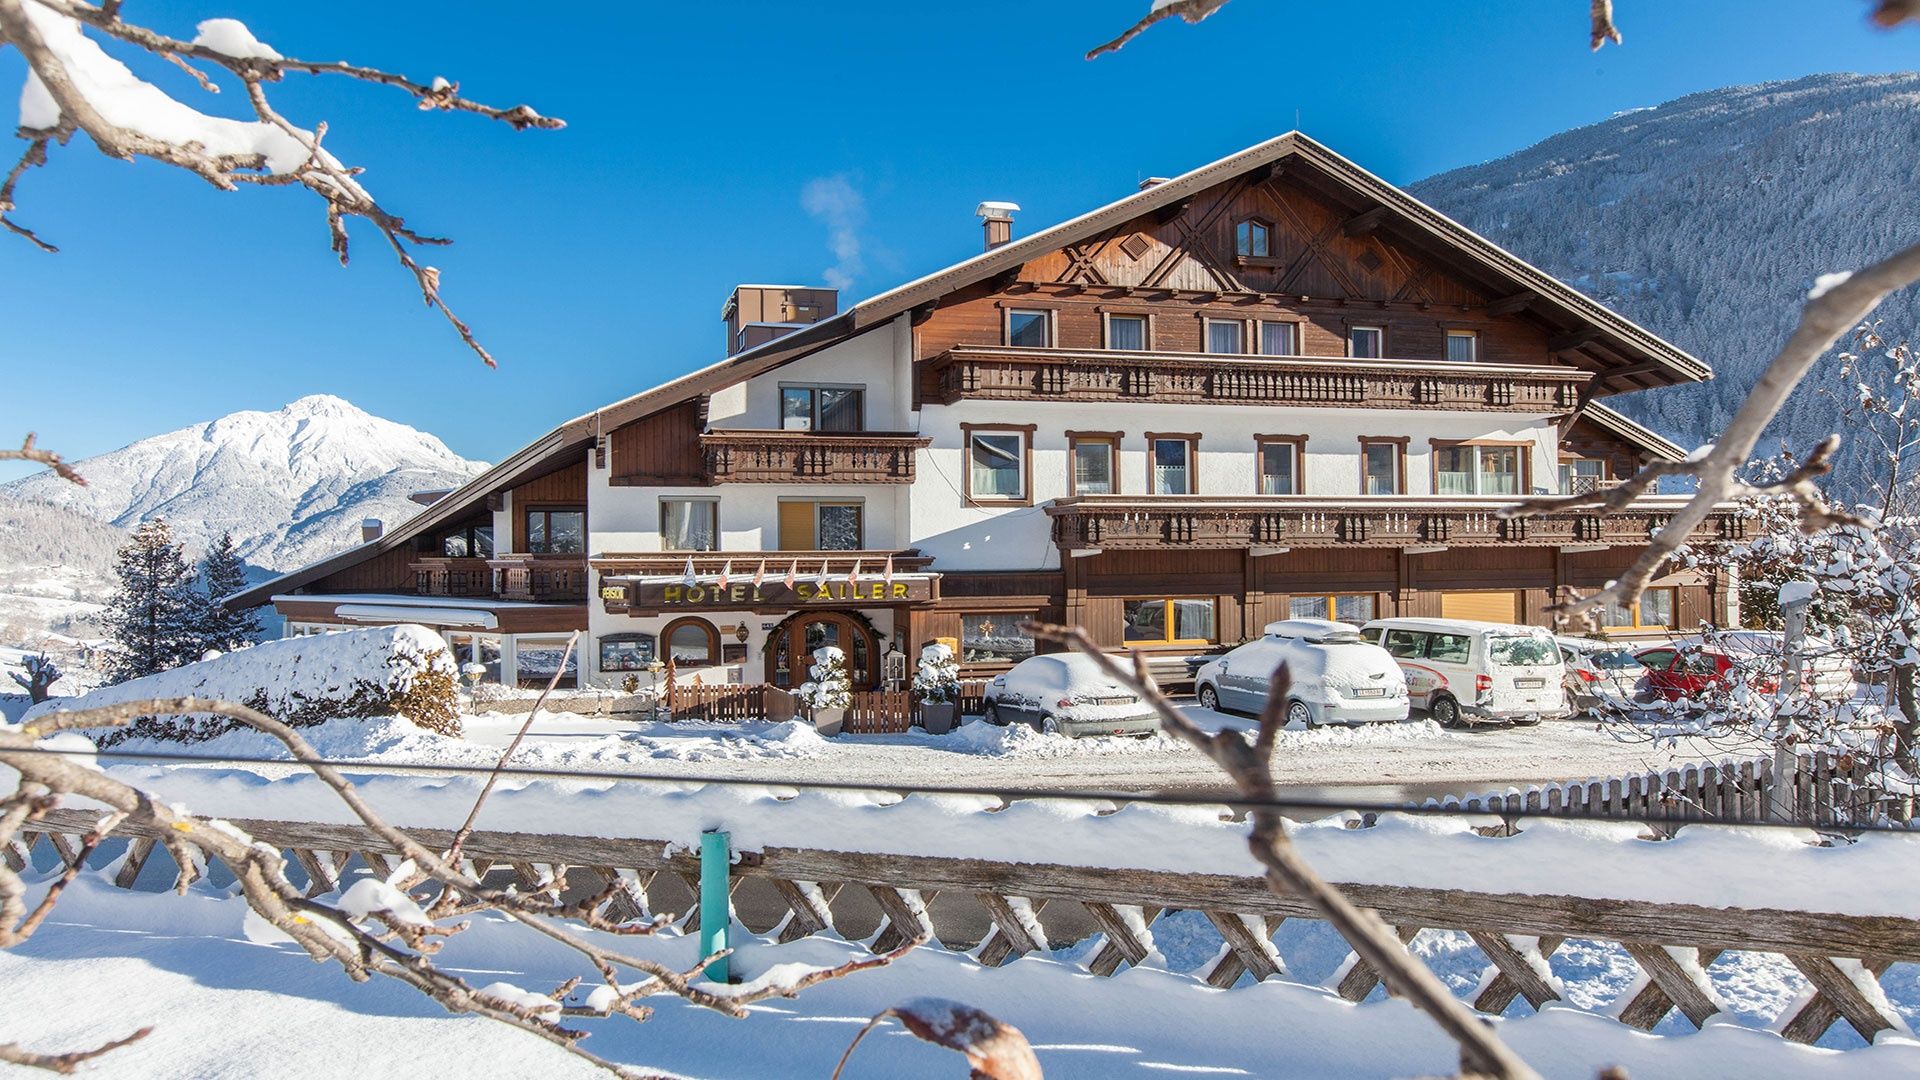 Schnee! Wintertraum im Pitztal. Beste Bedingungen zum Skifahren im Familotel Sailer & Stefan | Familotel Pitztal